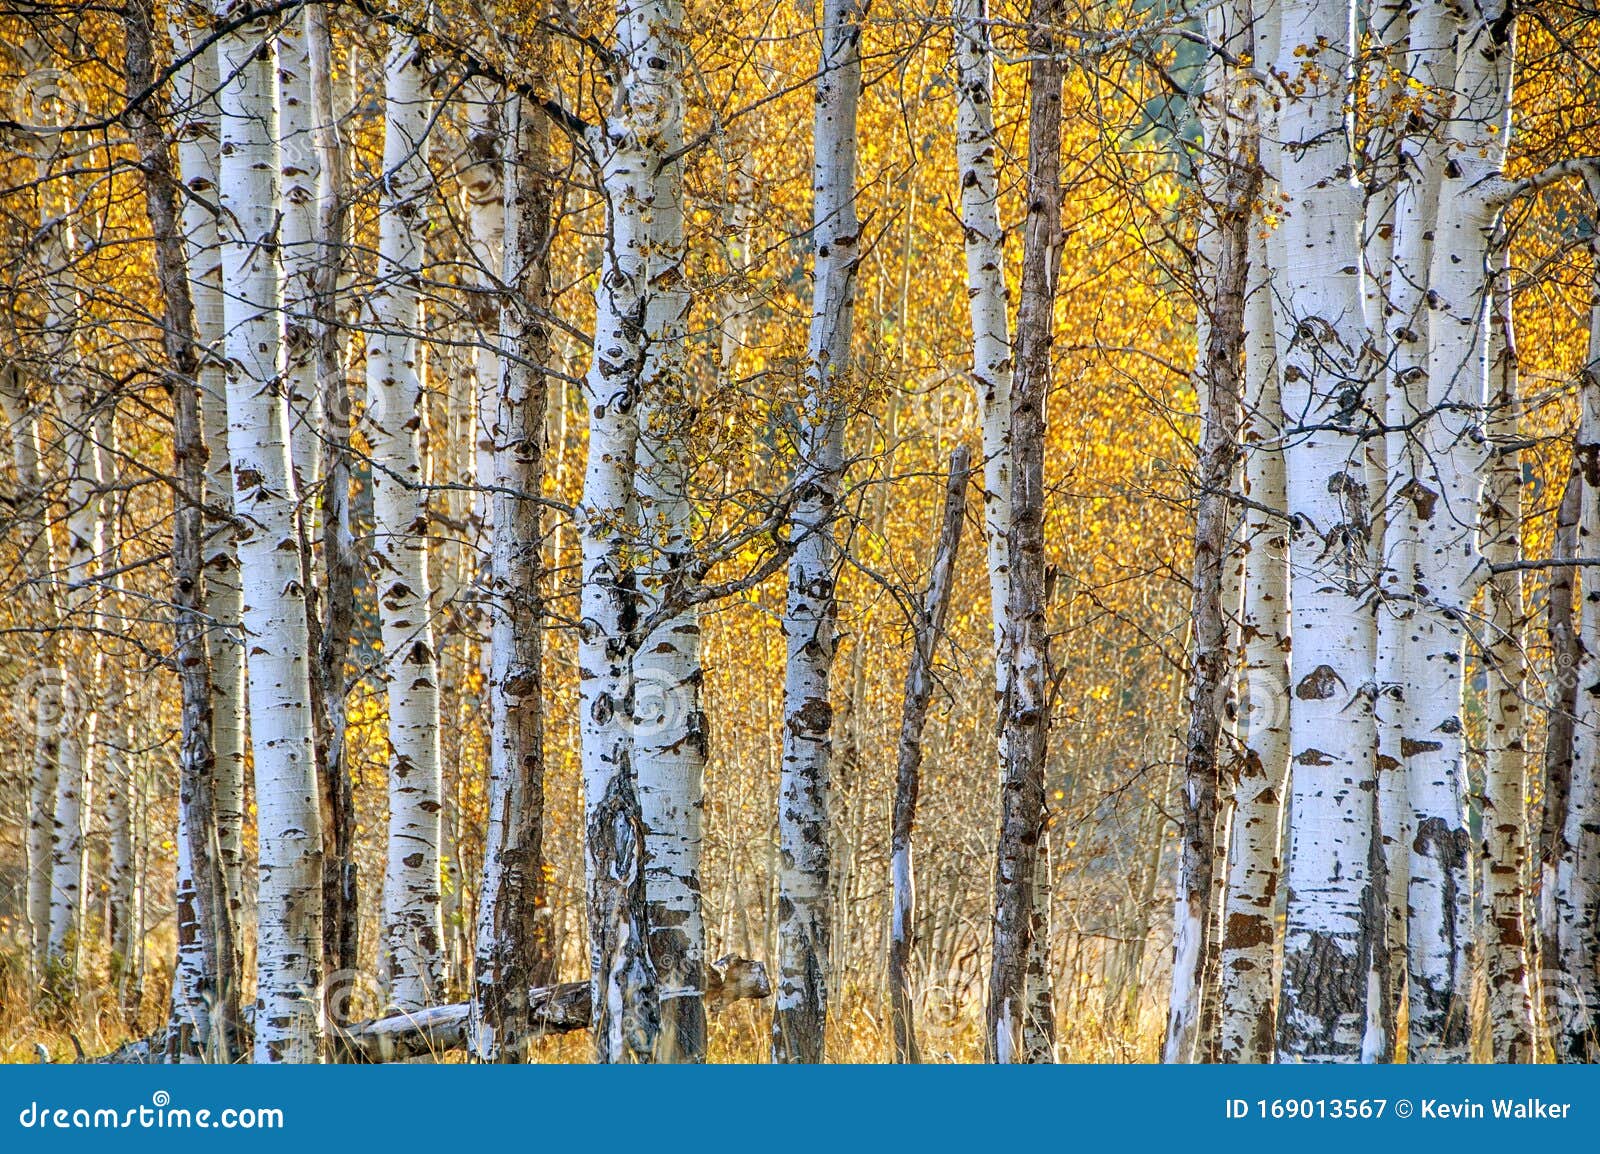 White Barked Quaking Aspen Trees Under Autumn Golden Leaves Stock Image